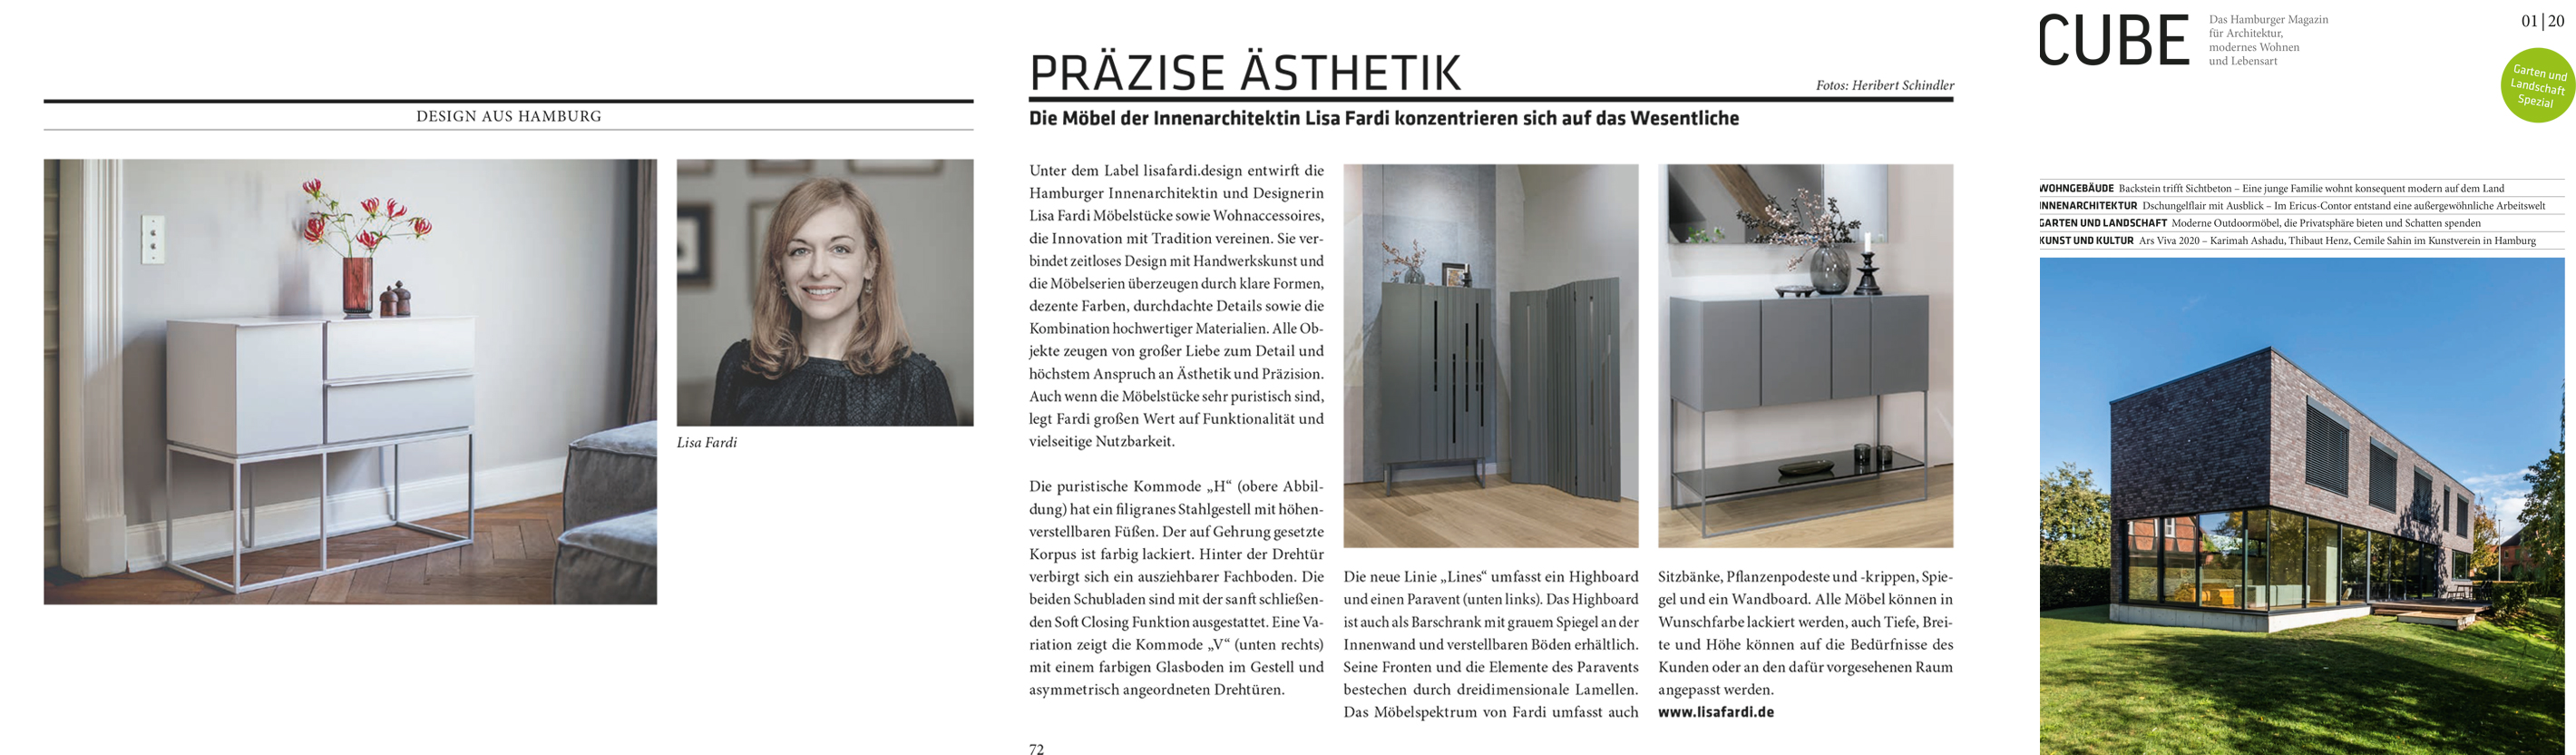 Artikel im Cube Magazin Haburg,Präzise Ästhetik, eine Artikel über das Label lisafardiDESIGN der Innenarchitektin Lisa Fardi aus Hamburg